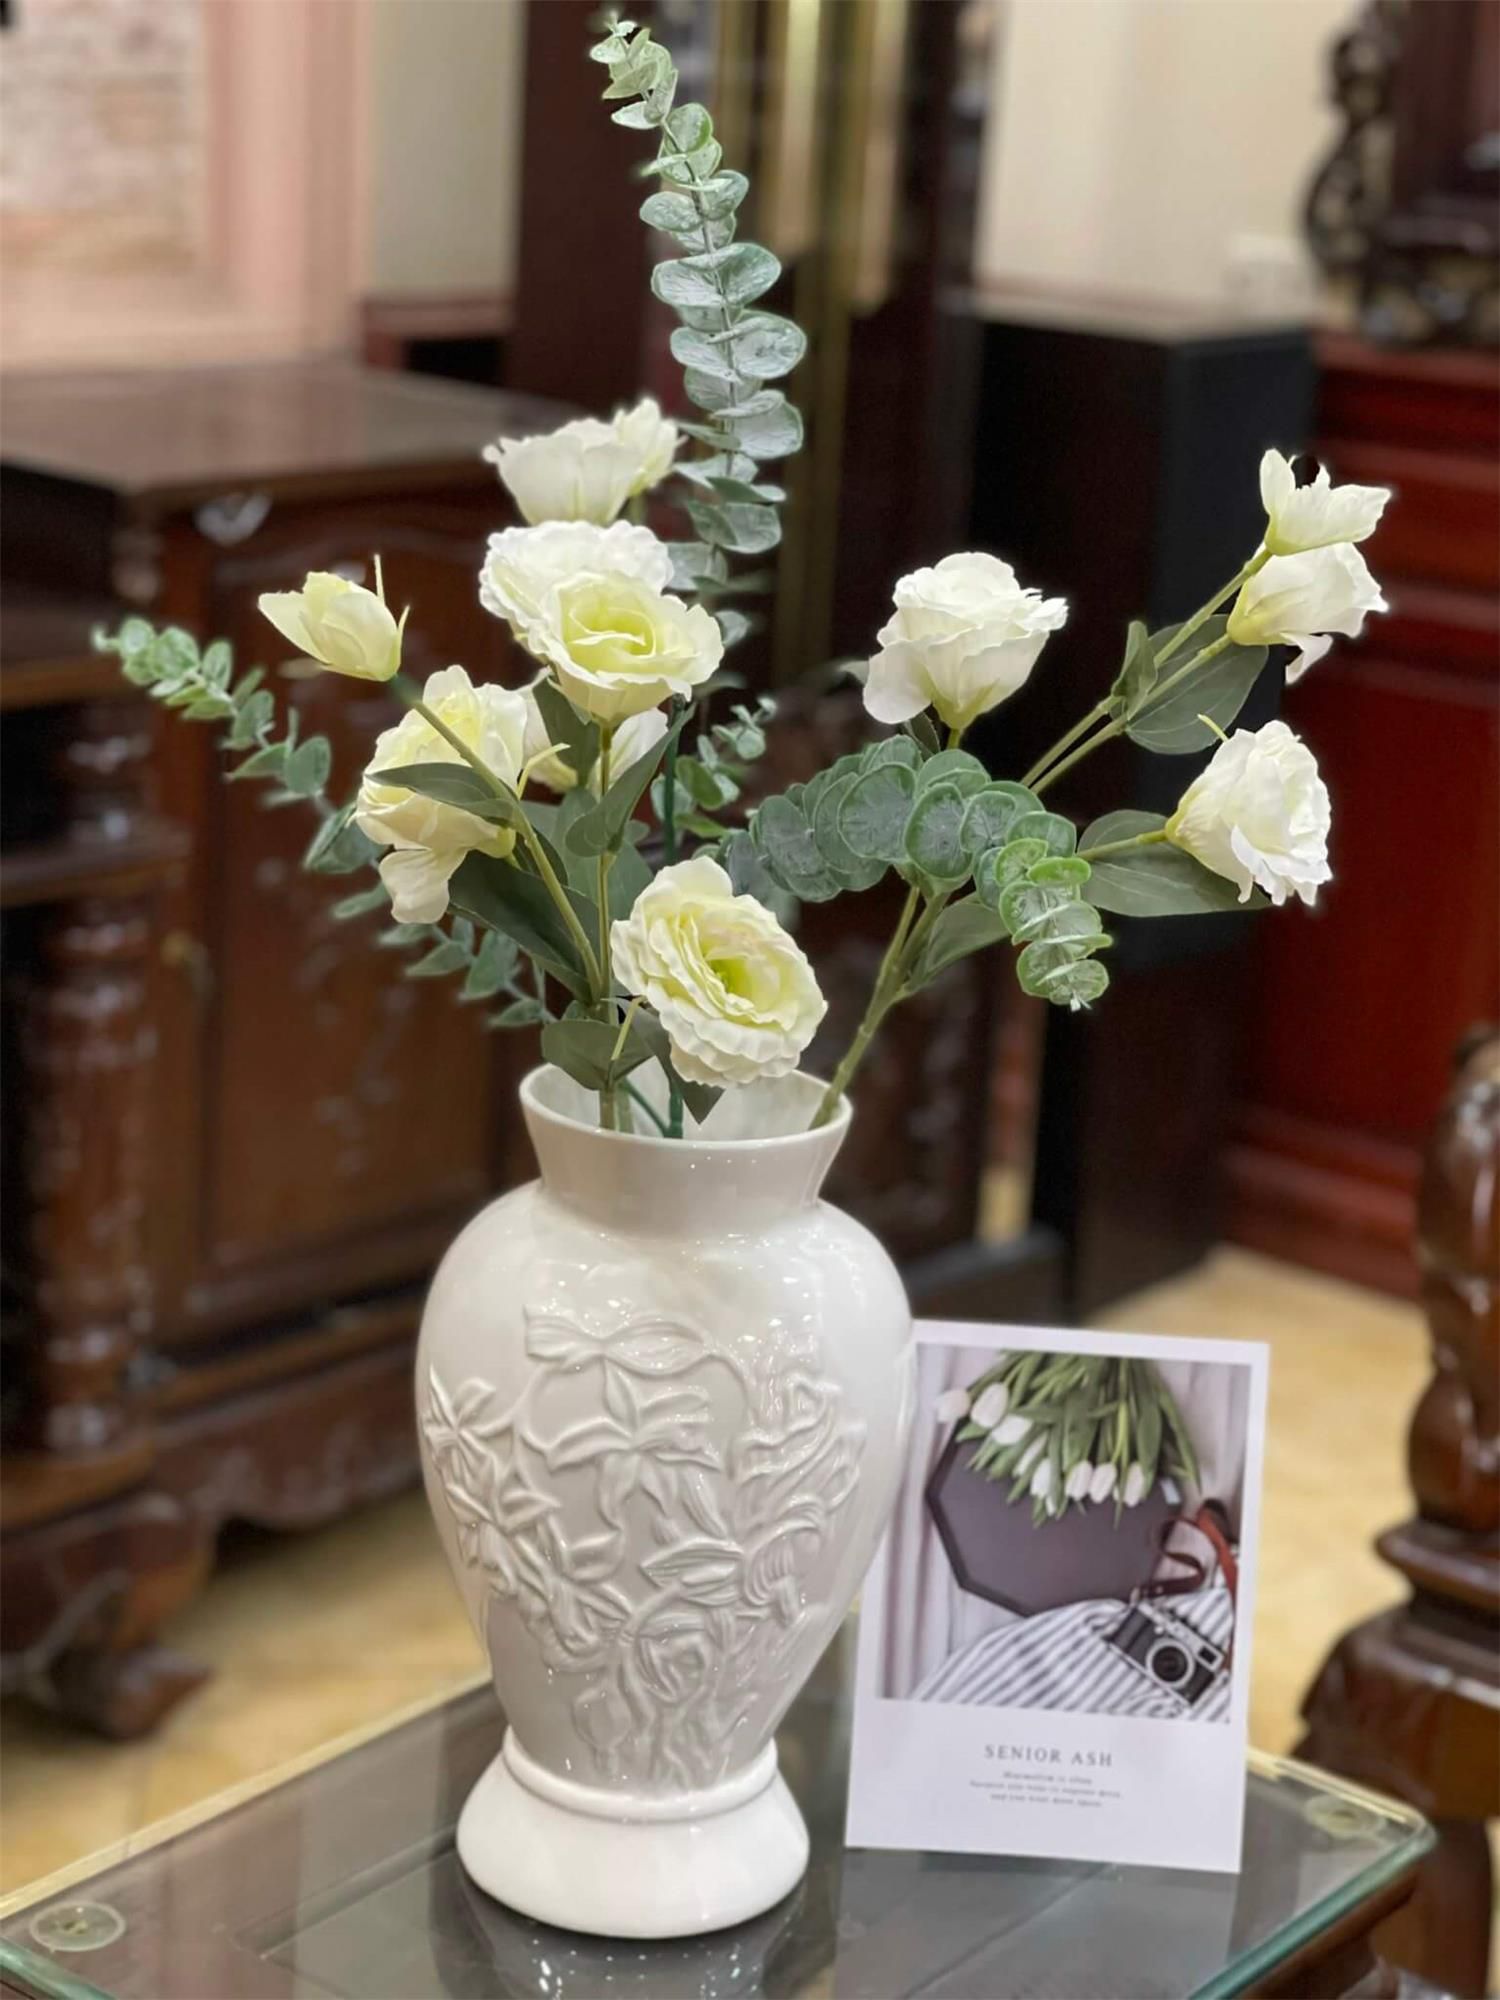 Nơi bán những mẫu lọ cắm hoa bằng gốm men trắng đắp nổi bát tràng không thể bỏ qua